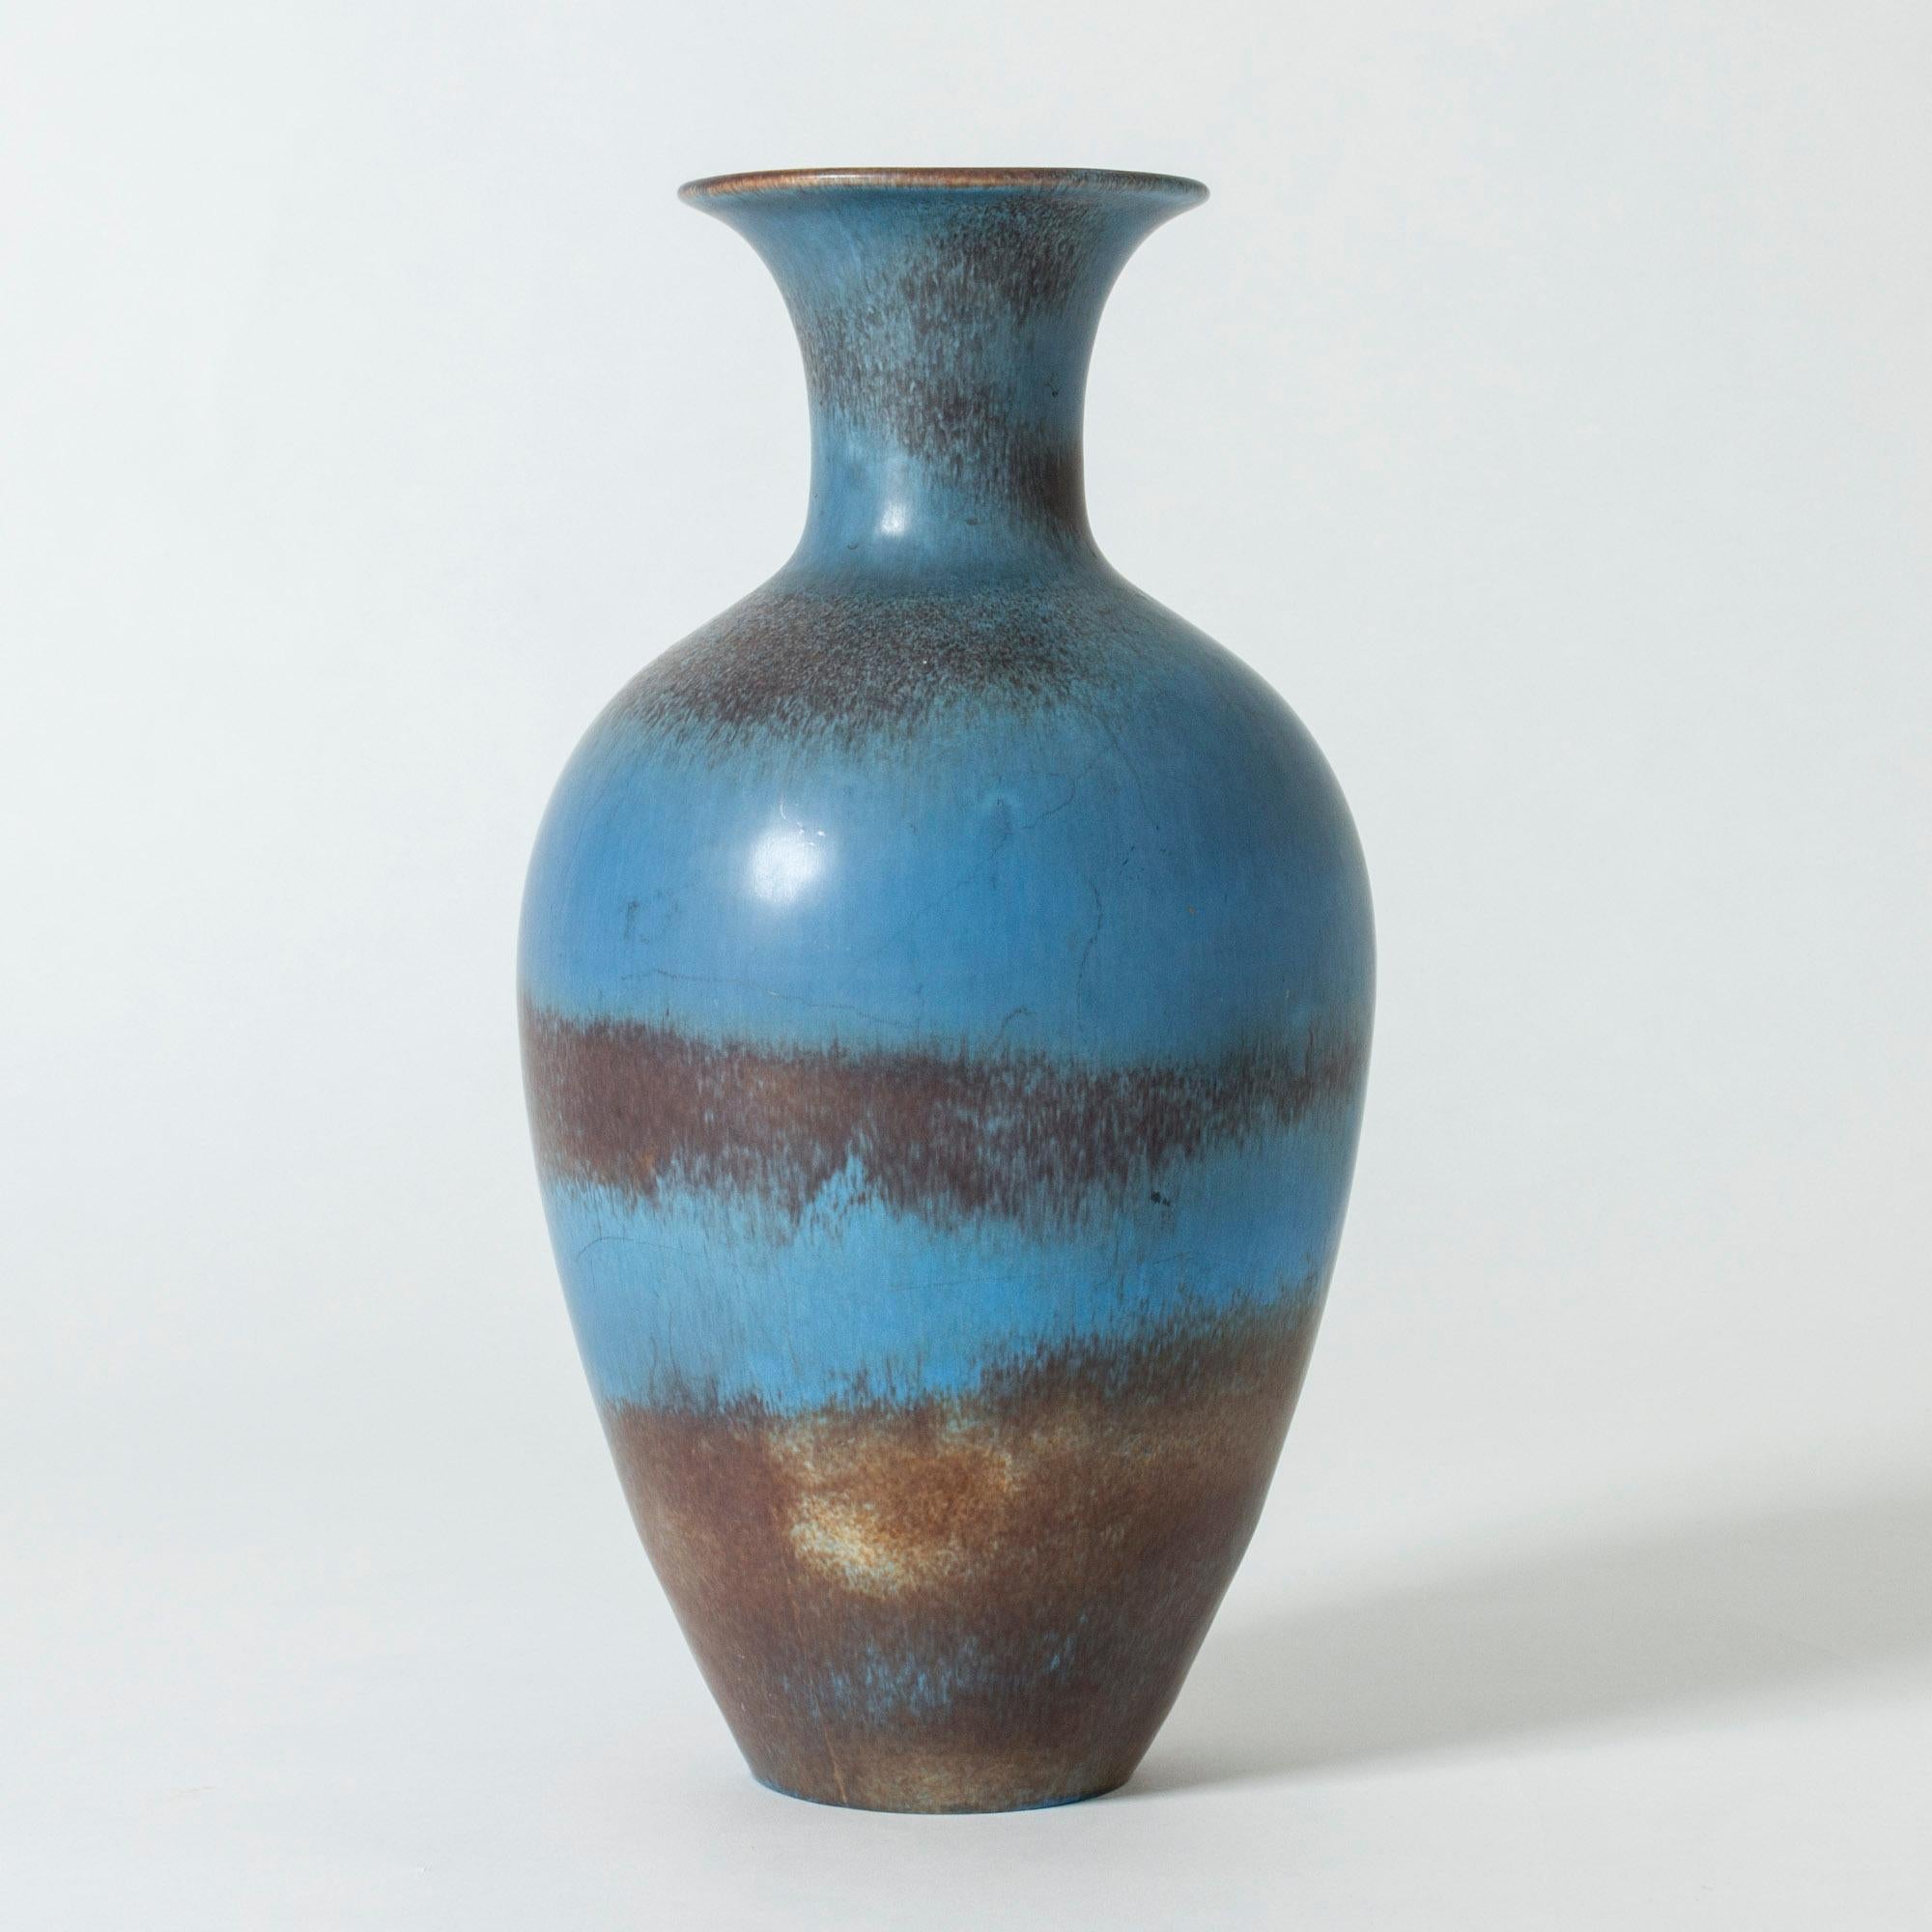 Scandinavian Modern Midcentury Stoneware Vase by Gunnar Nylund for Rörstrand, Sweden, 1950s